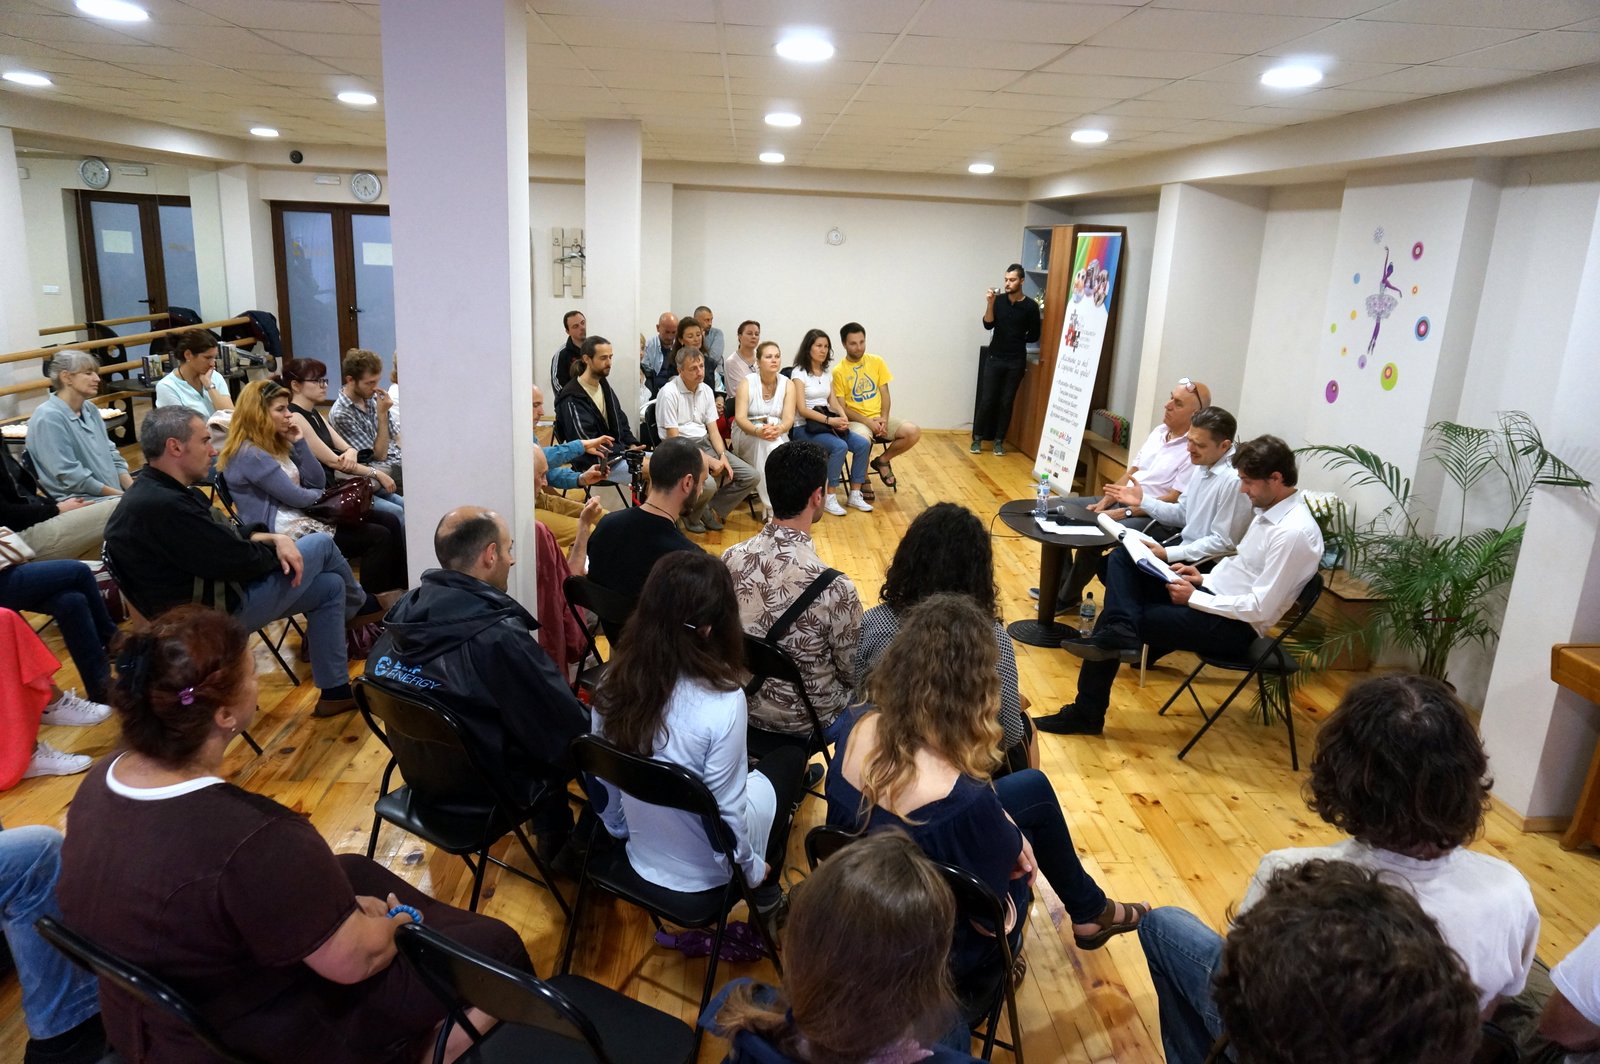 Снимка от залата по време на представянето на книгата Махабхарата в Пловдив.